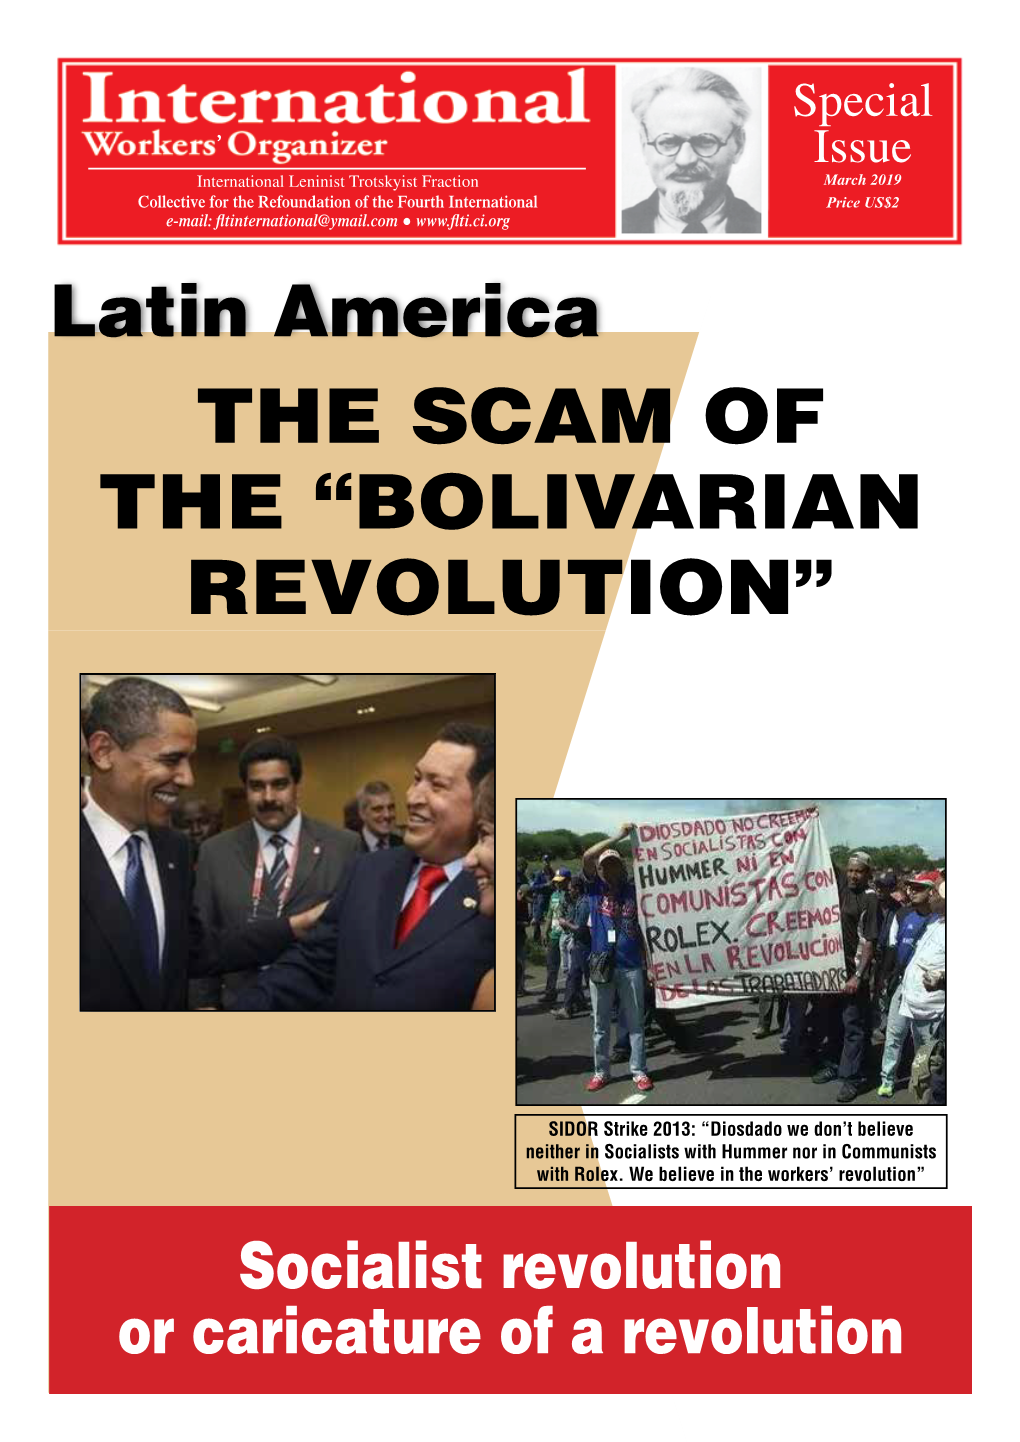 Bolivarian Revolution”